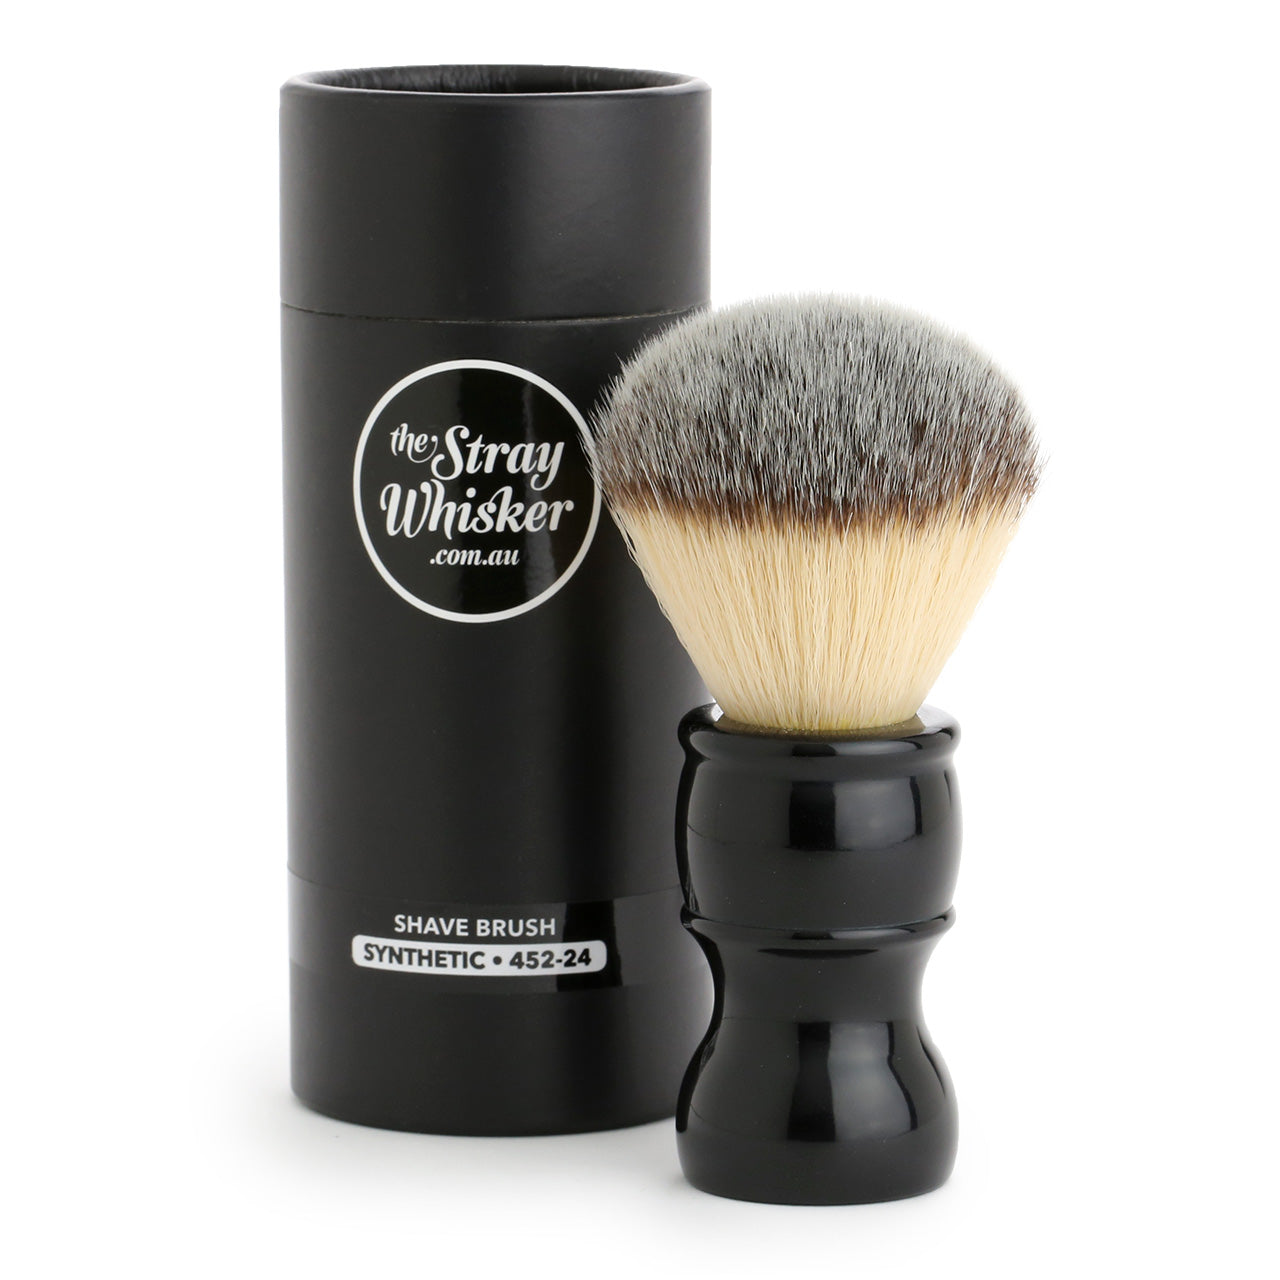 The Stray Whisker Synthetic Shaving Brush - 24mm